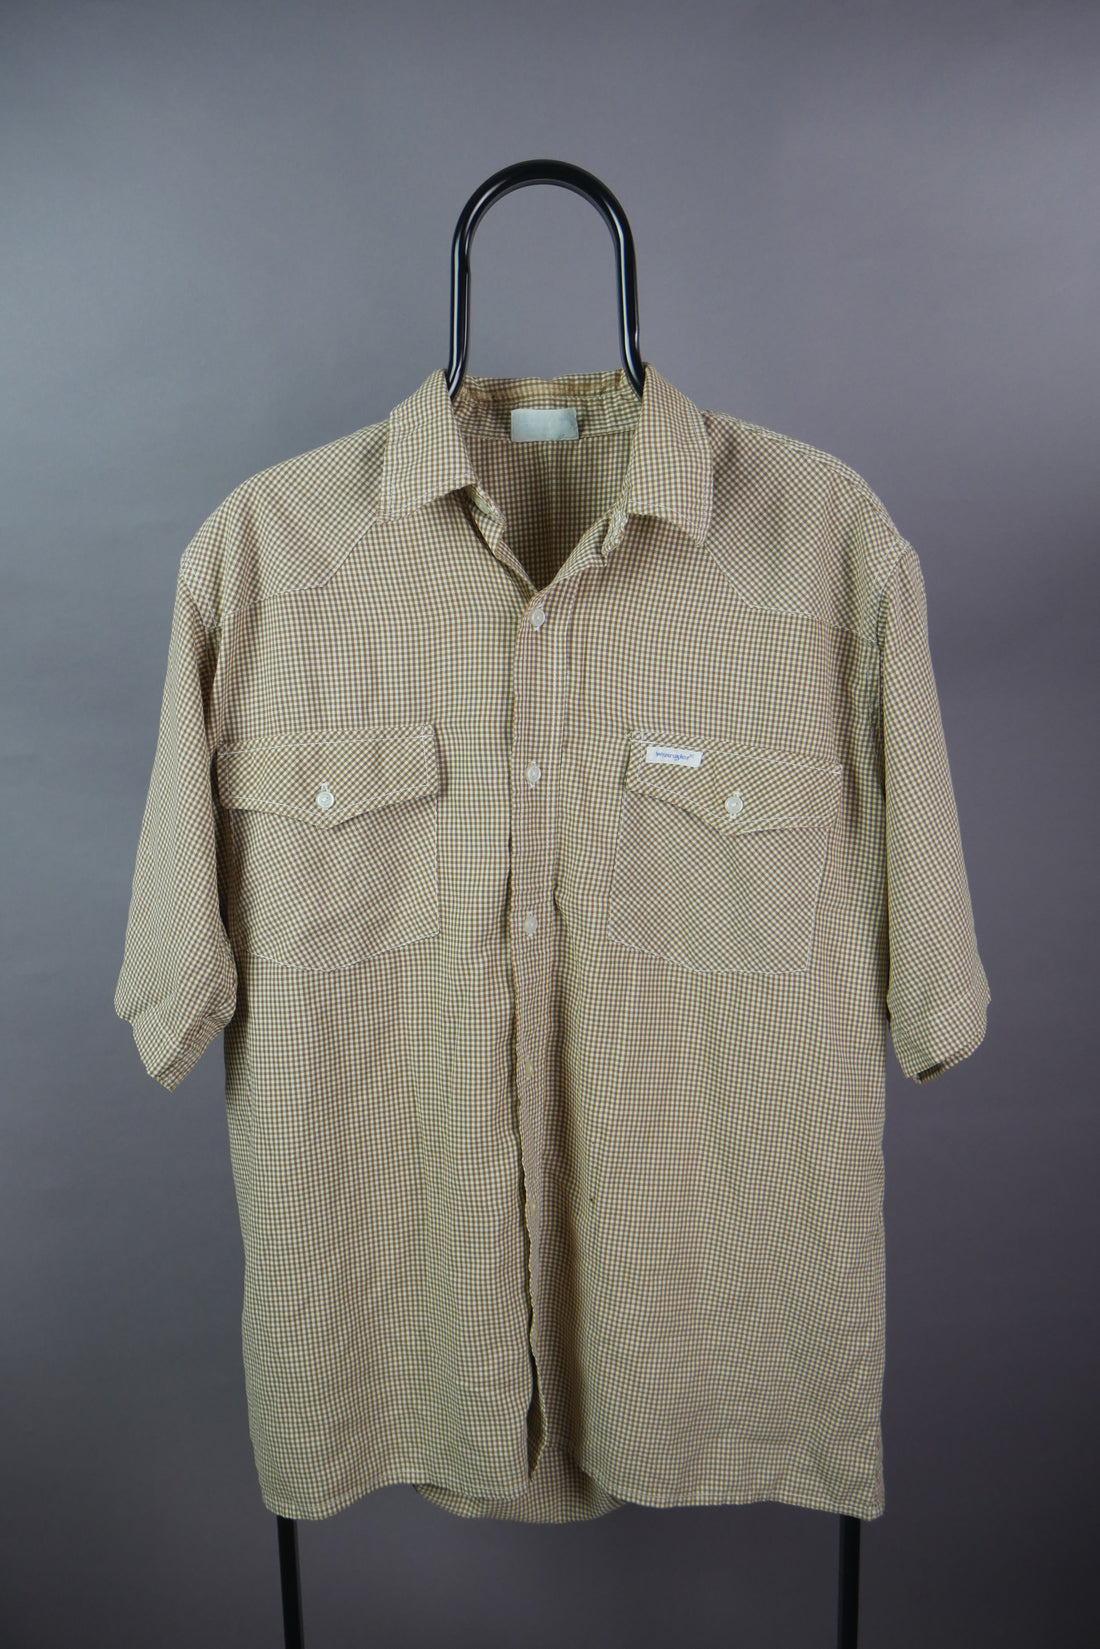 The Vintage Wrangler Western Gingham Shirt (L)